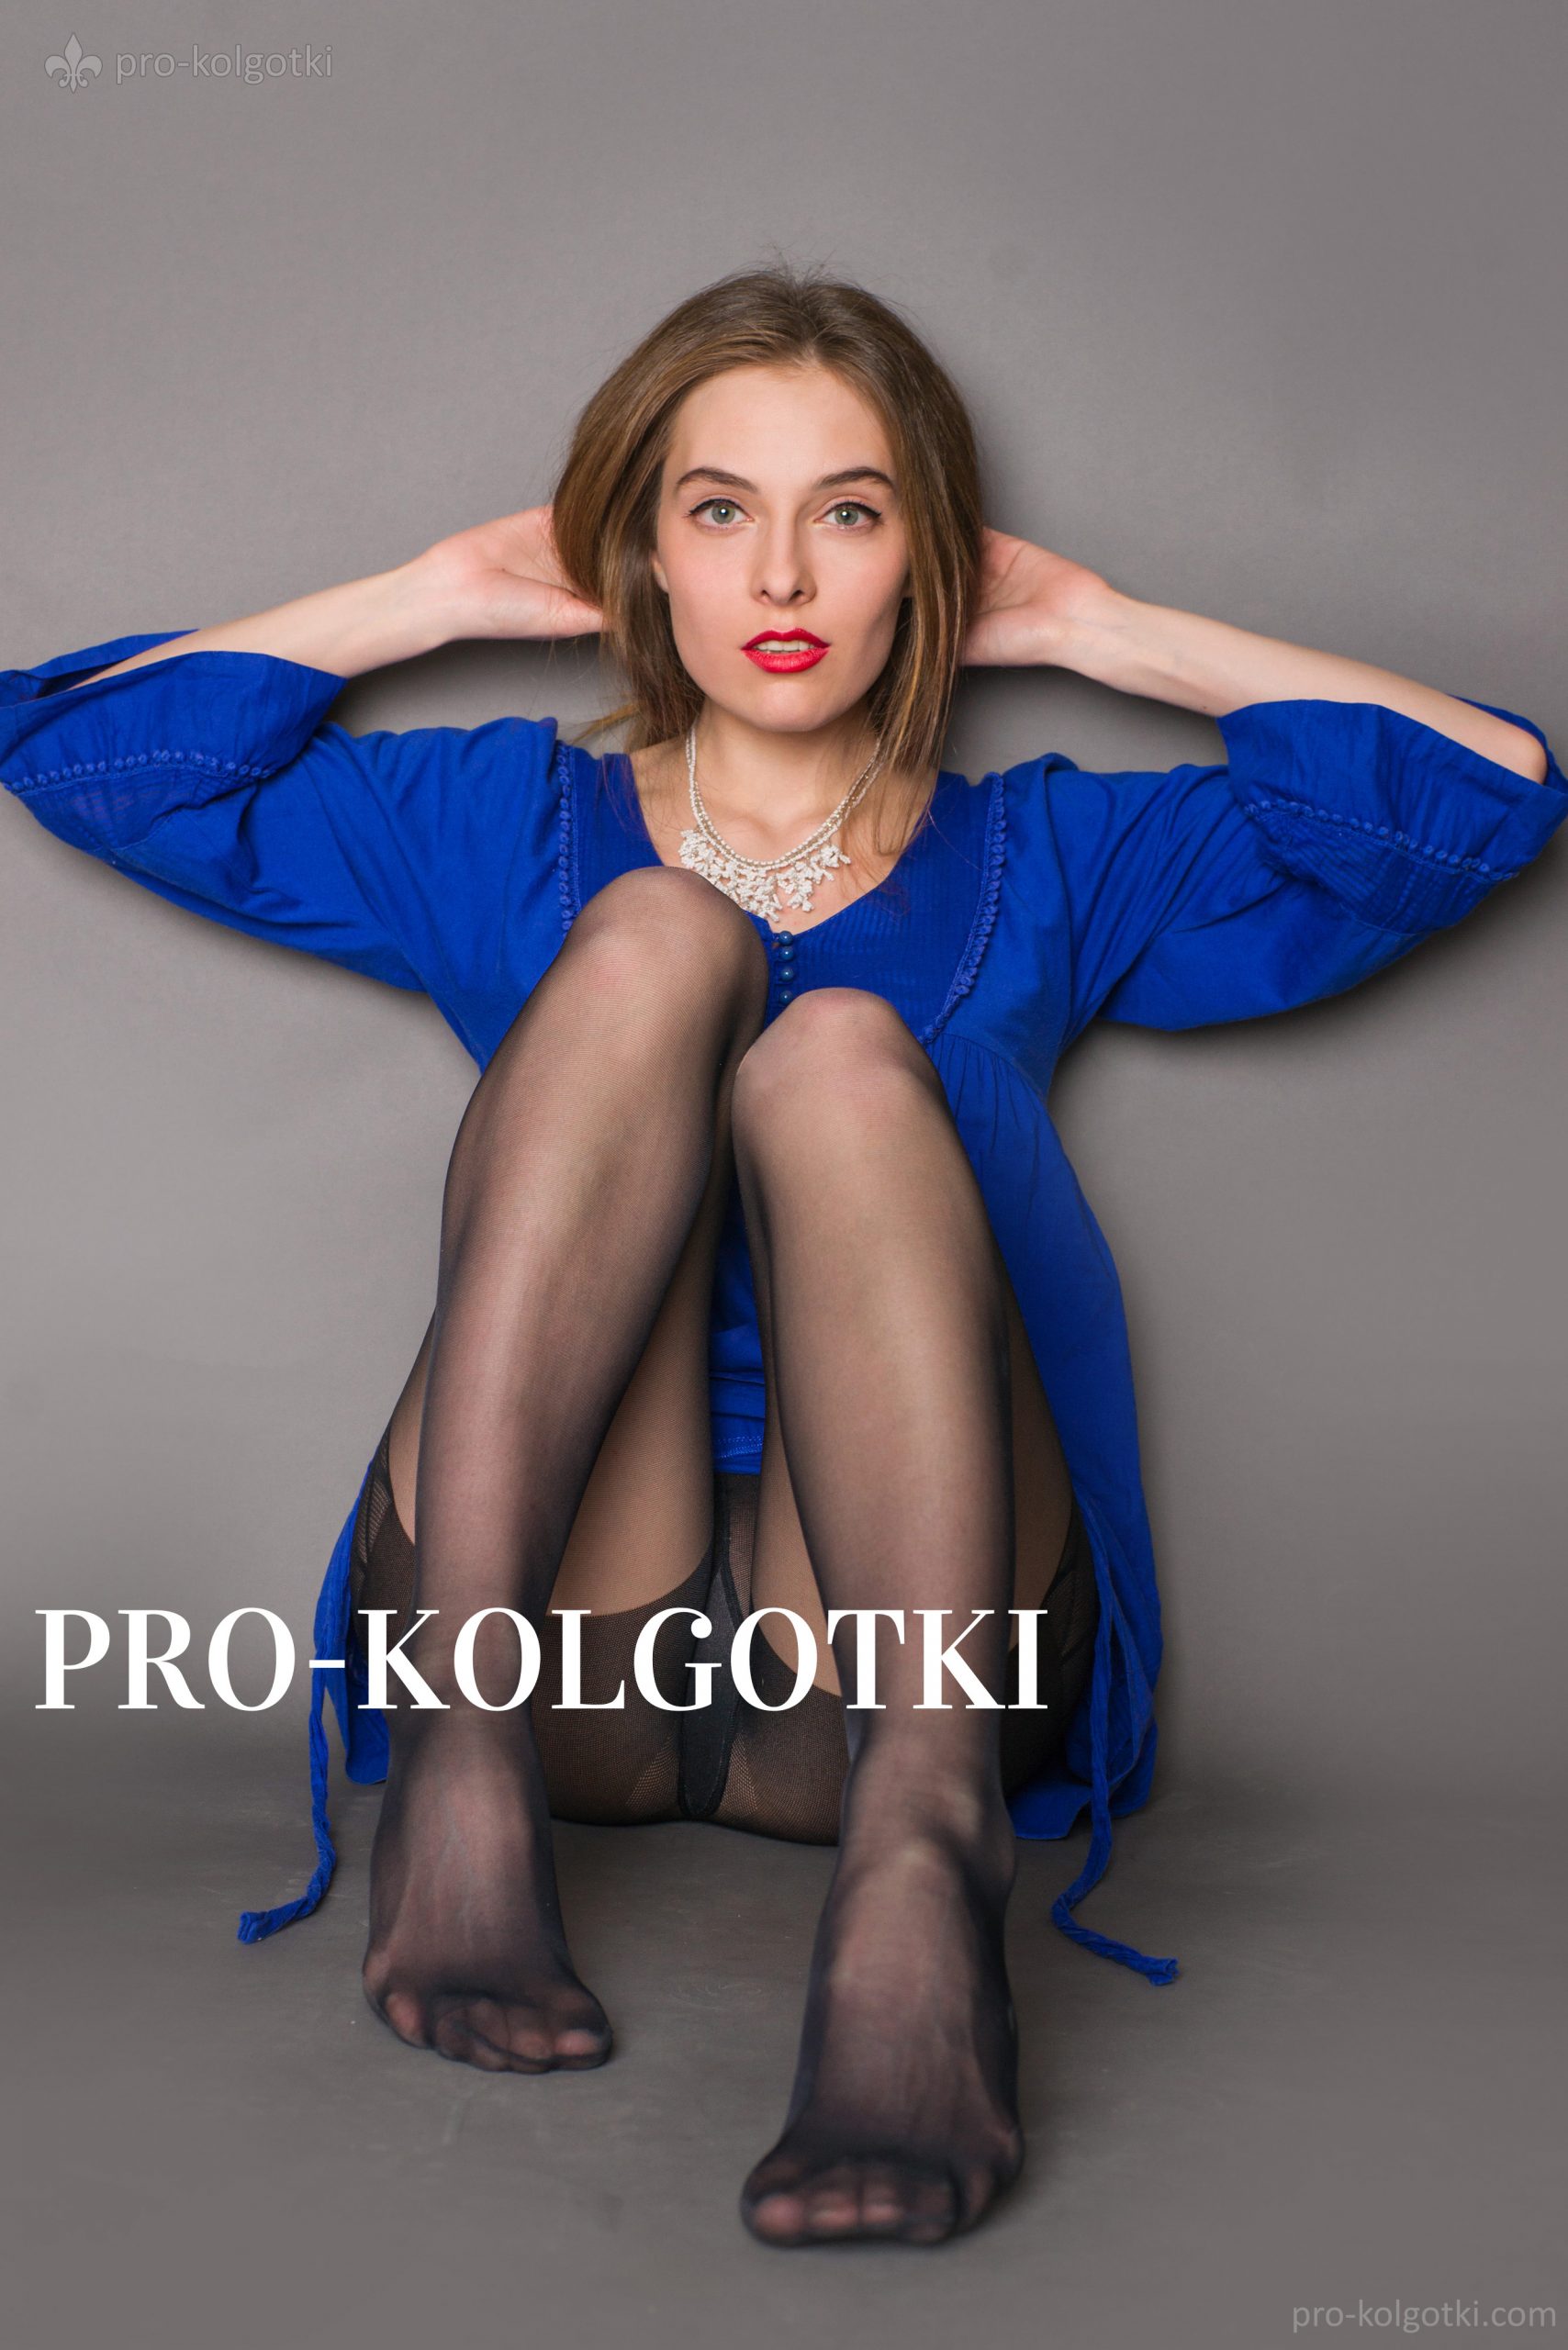 girls in pantyhose - photo from pro-kolgotki magazine May 2016 part 1